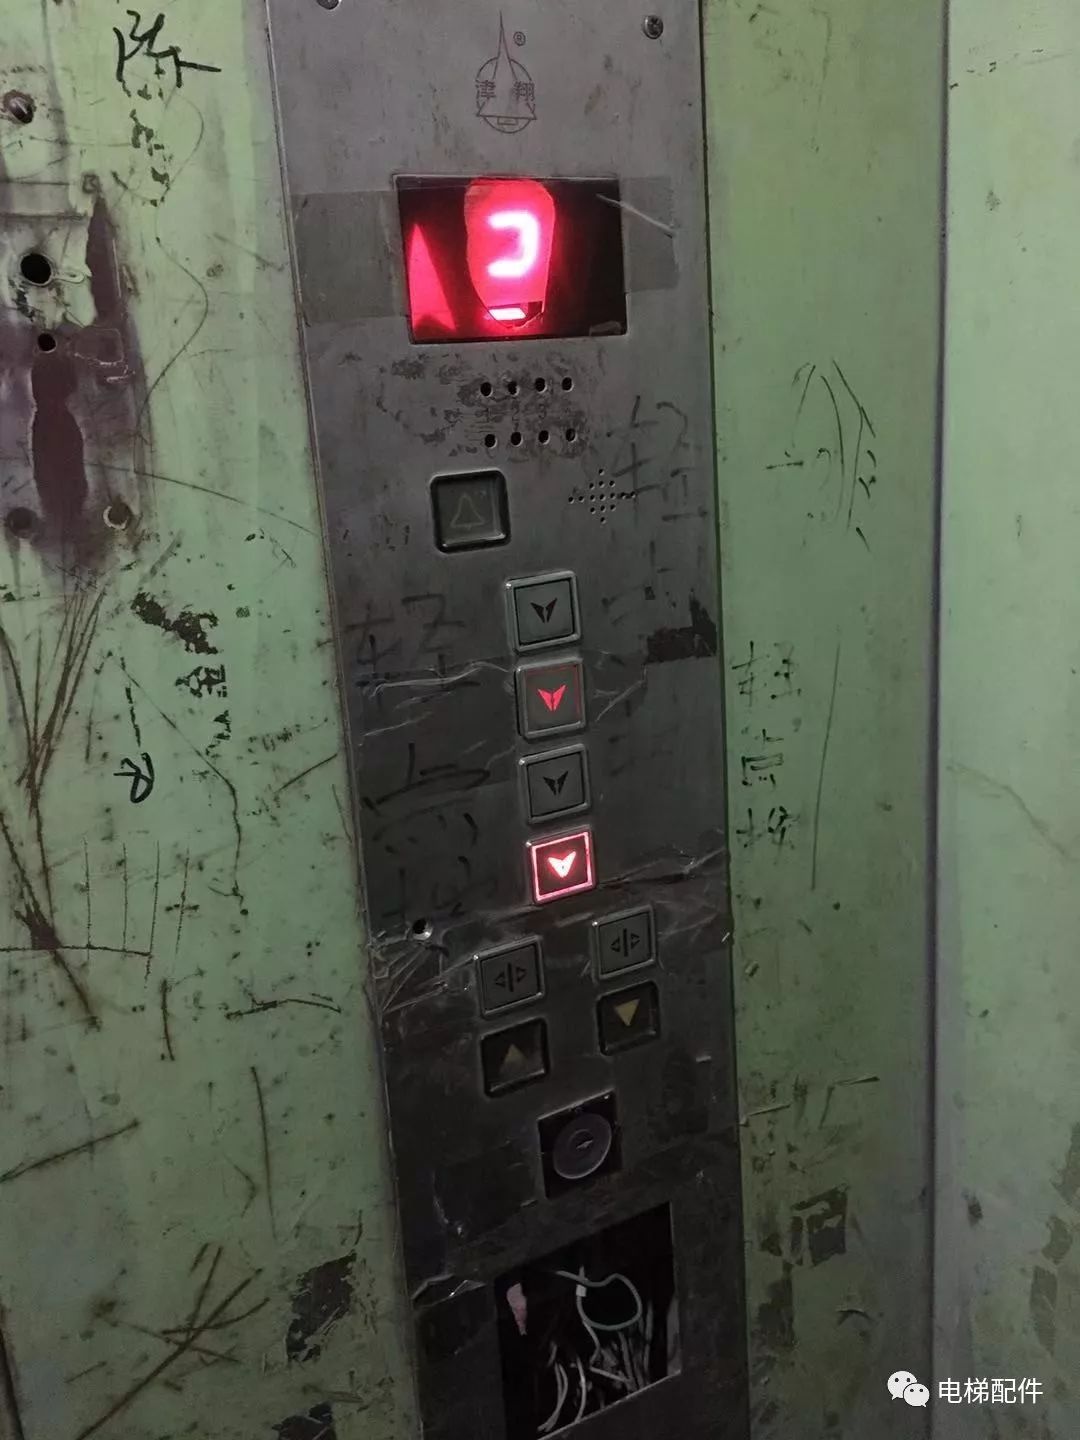 修电梯,相信你也有过吧04副轨出厂就这样了,谁能解释下这是什么造型